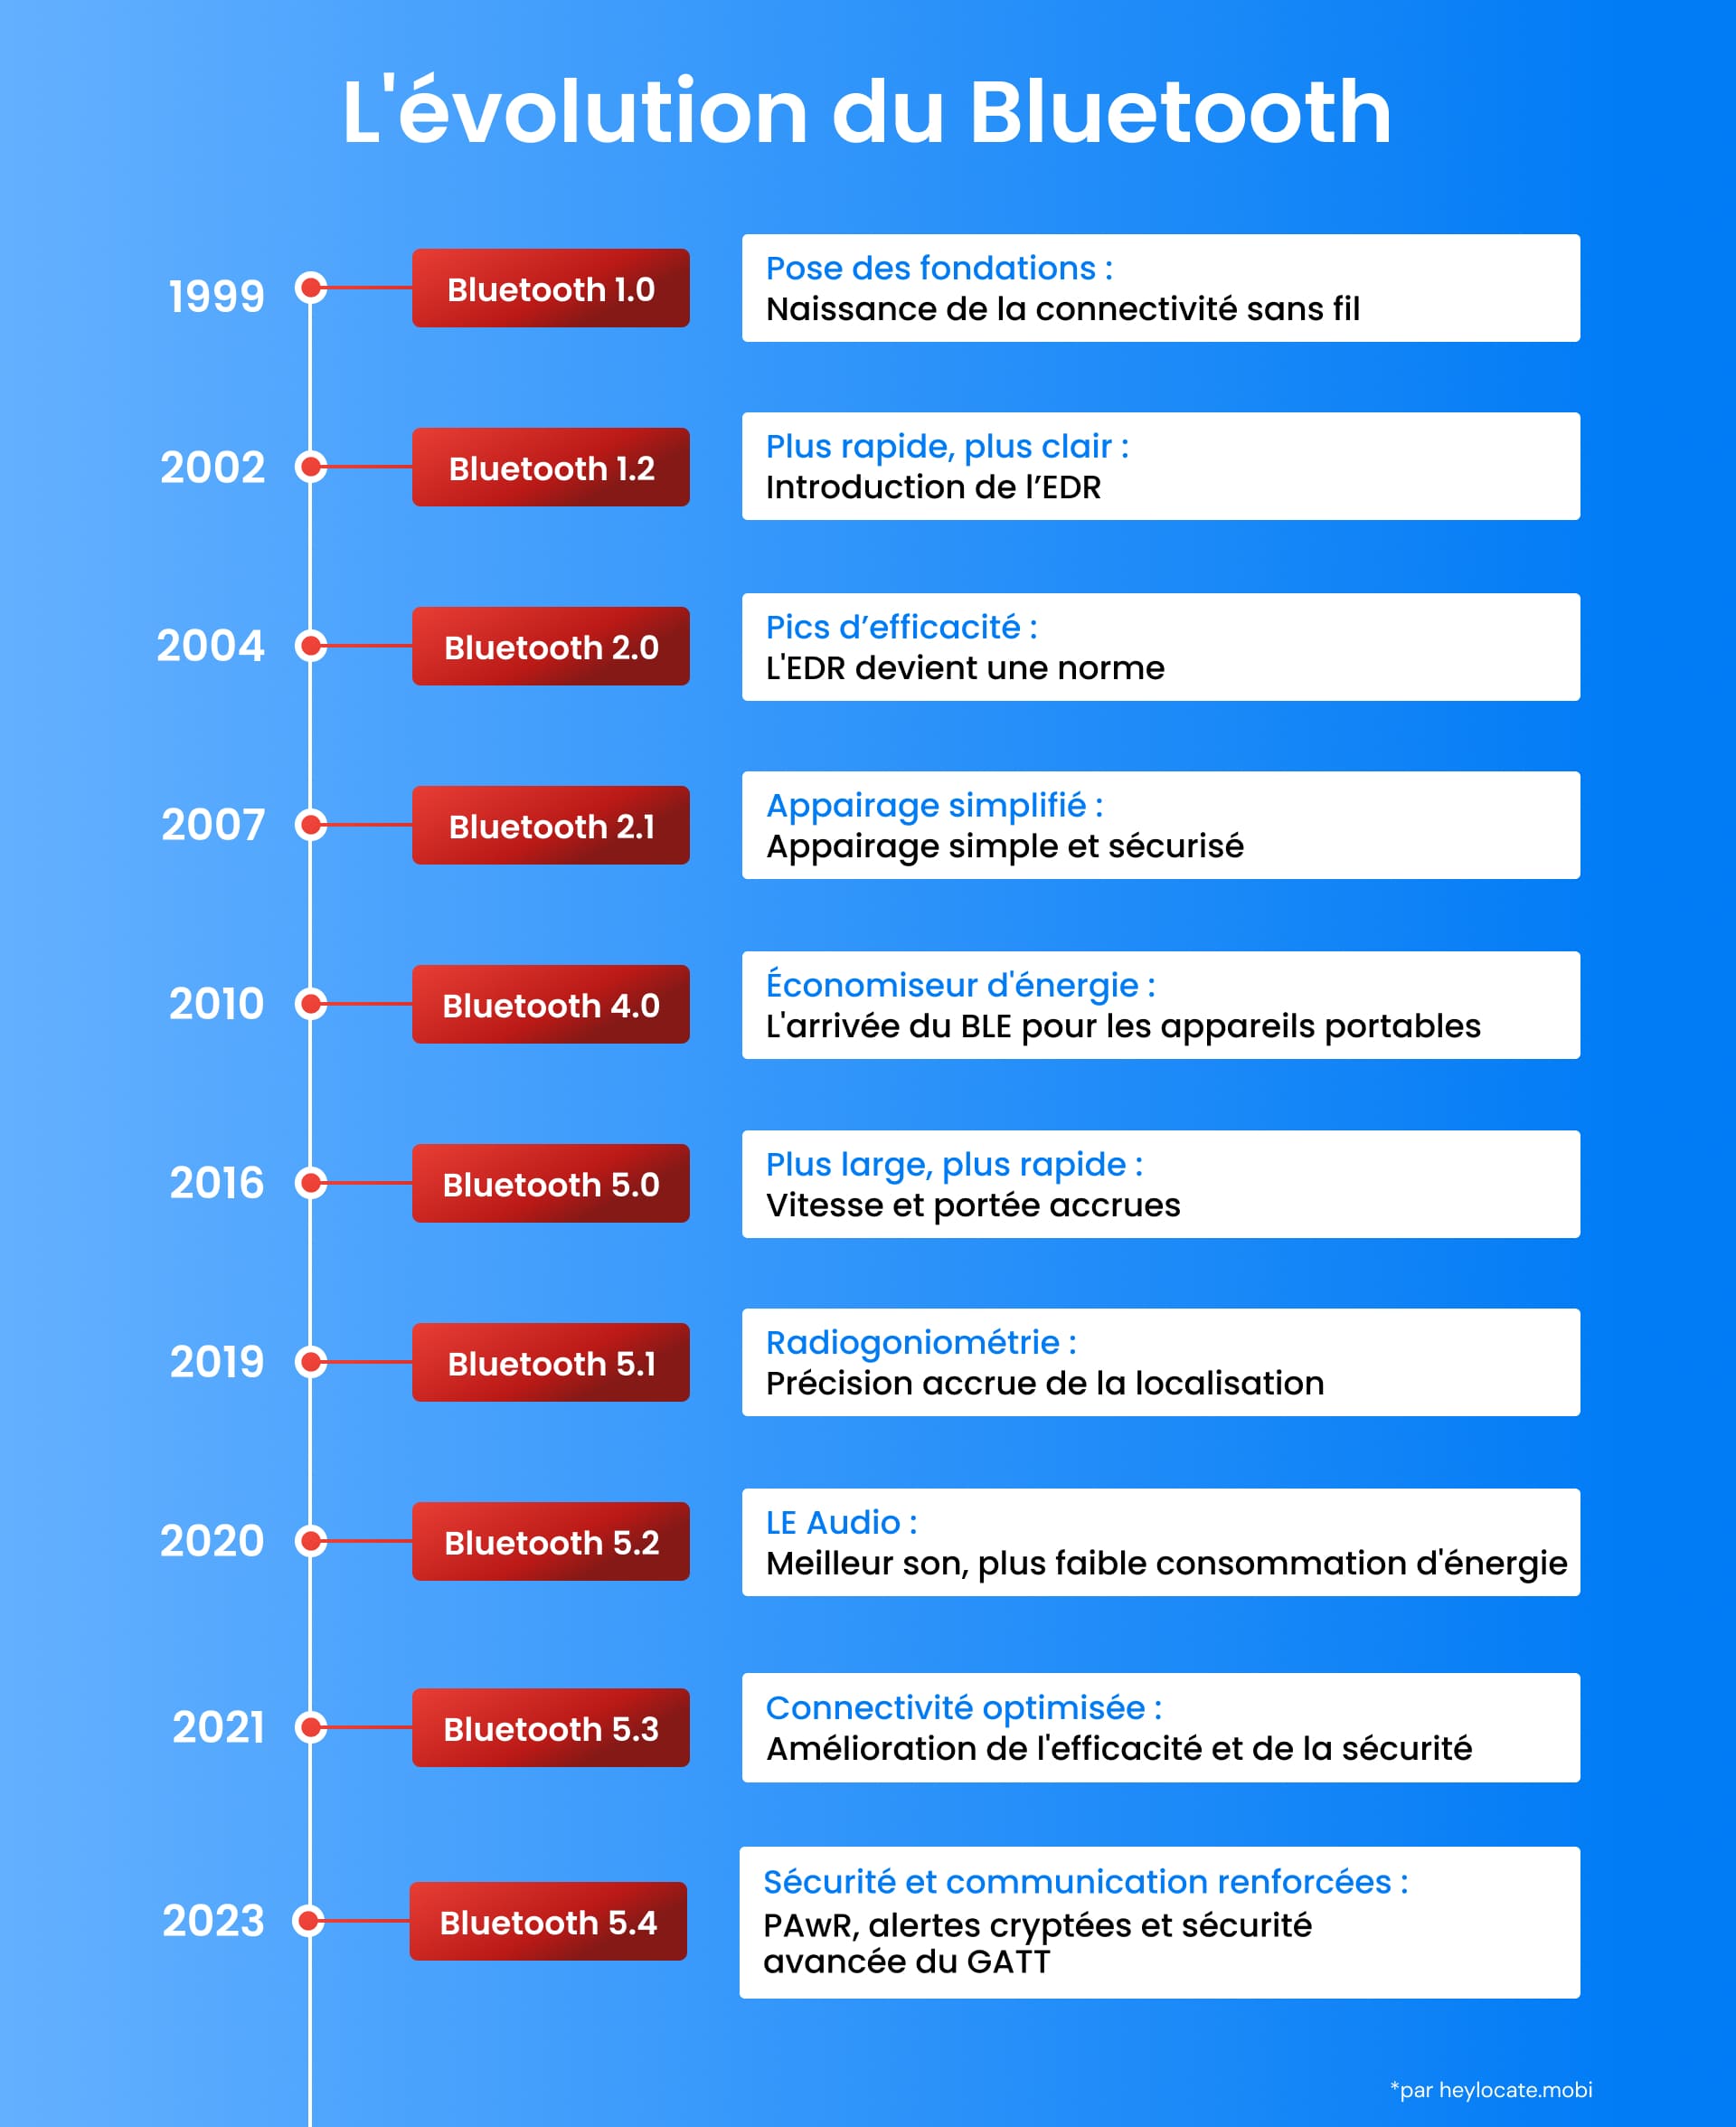 Tableau chronologique montrant l'évolution de Bluetooth de la version 1.0 en 1999 à la version 5.4 en 2023, détaillant les principales étapes du développement de la technologie